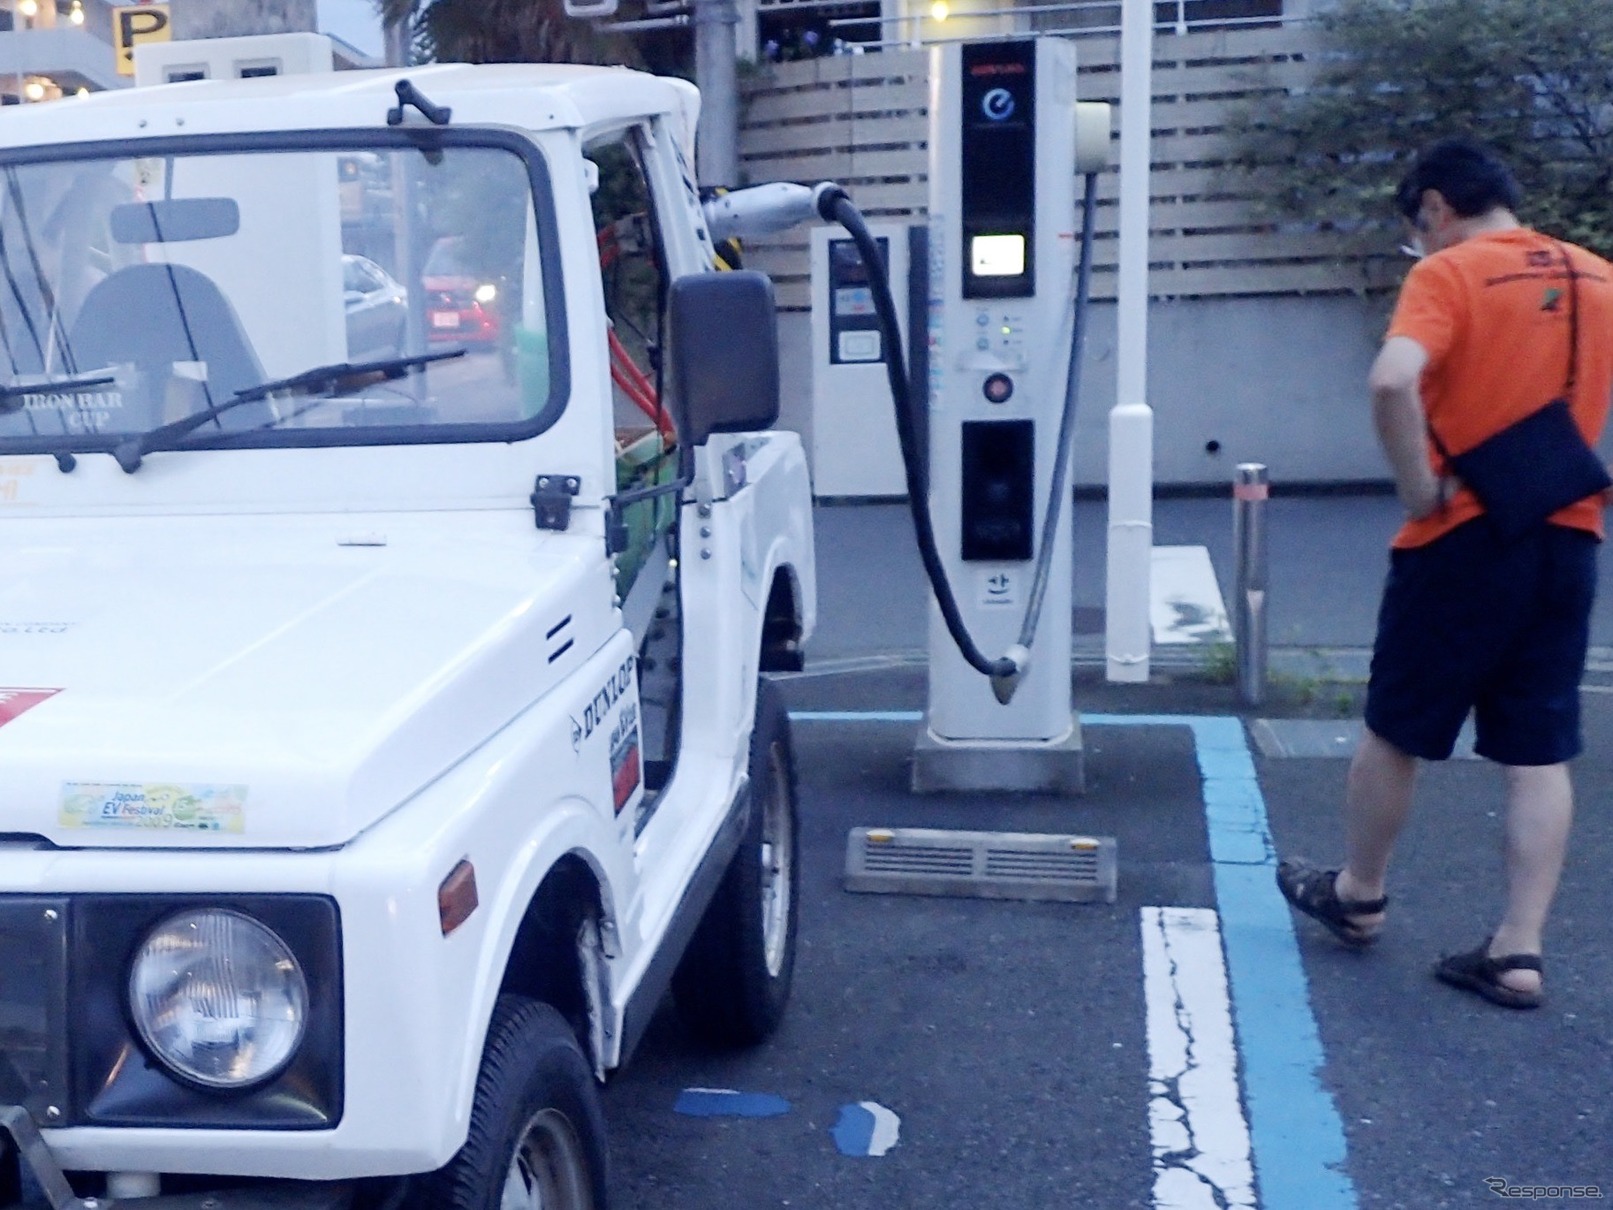 2020年7月12日18時58分、クロカン四駆の電気自動車が、日本で初めてCHAdeMO急速充電器からの充電に成功した瞬間。